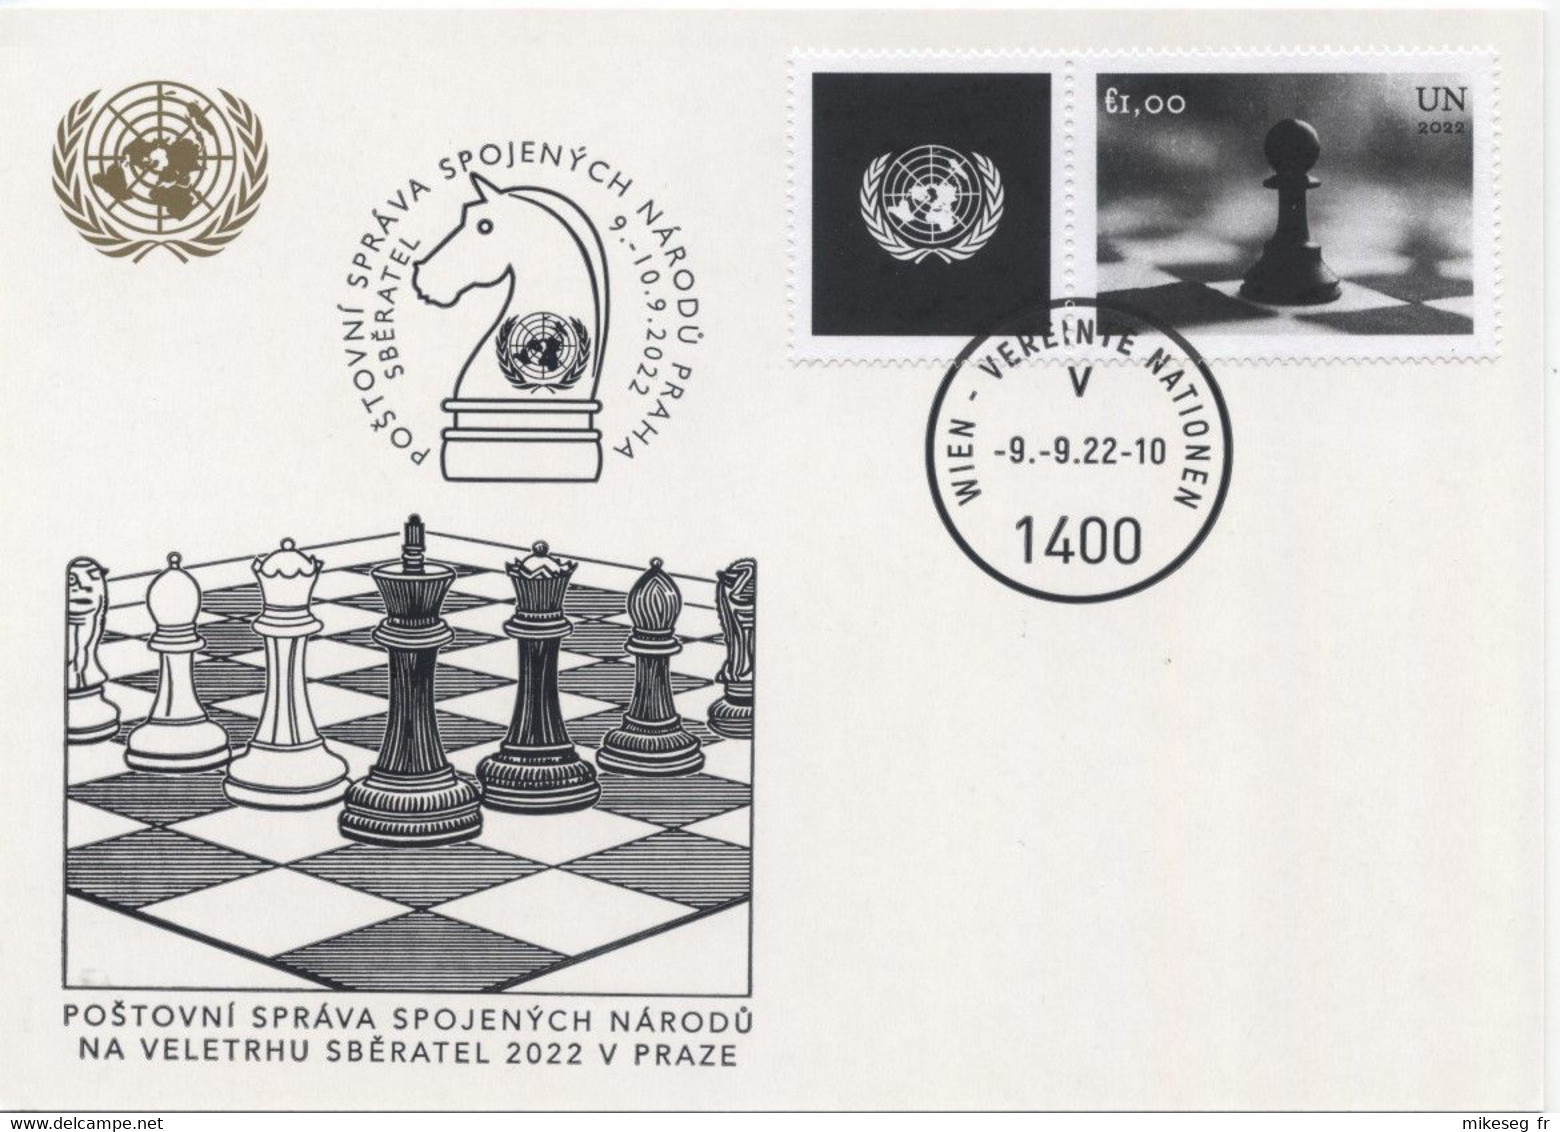 ONU Vienne 2022  - White Card Sbératel Prague 9-10 9 2022 - Timbre Echecs Chess Schach - Maximumkarten